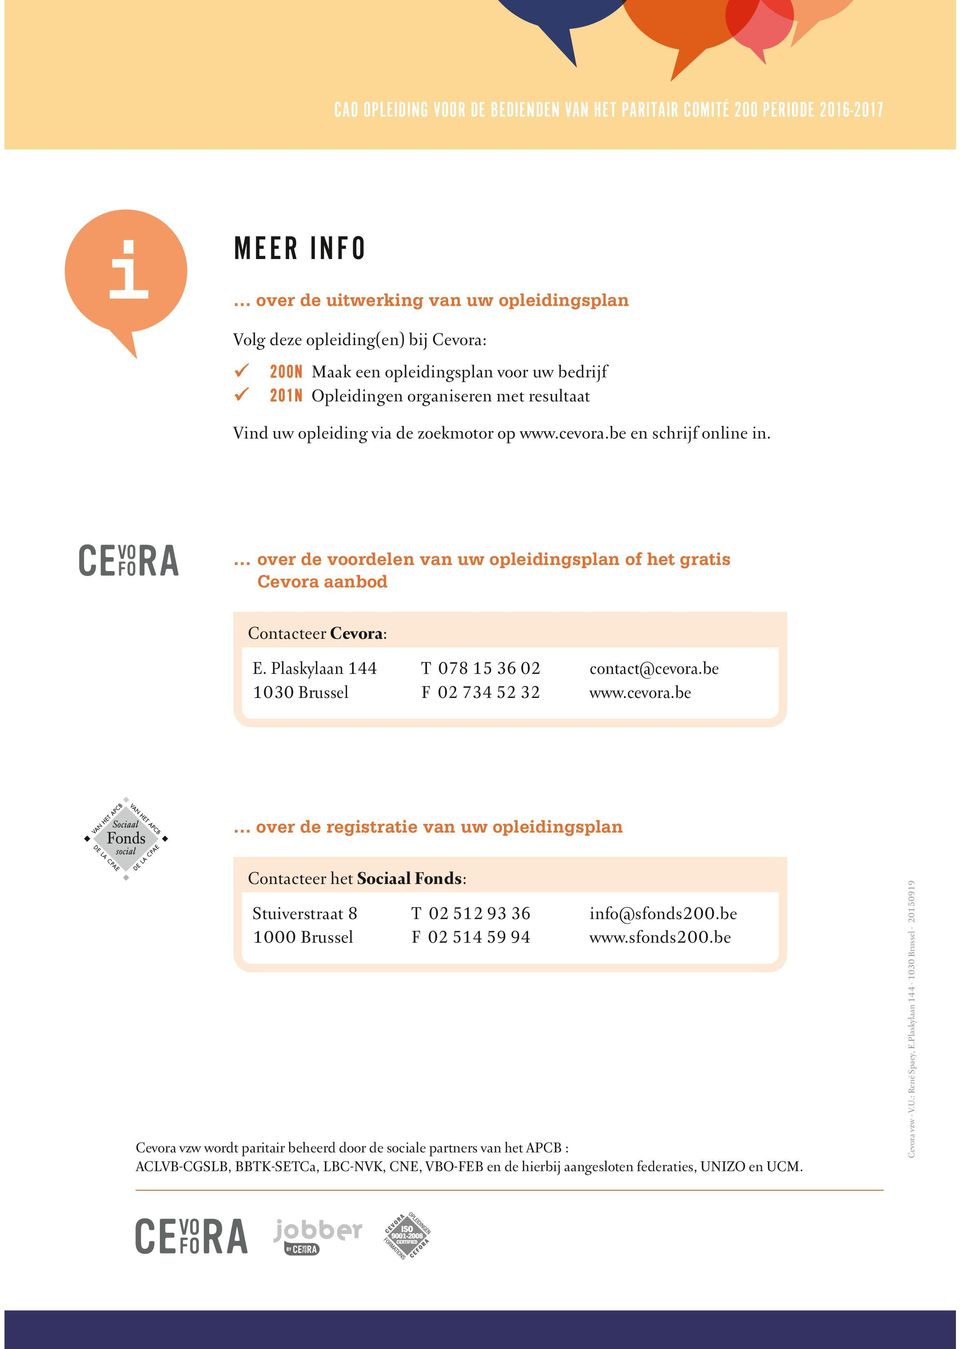 over de voordelen van uw opleidingsplan of het gratis Cevora aanbod Contacteer Cevora: E. Plaskylaan 144 1030 Brussel T 078 15 36 02 F 02 734 52 32 contact@cevora.